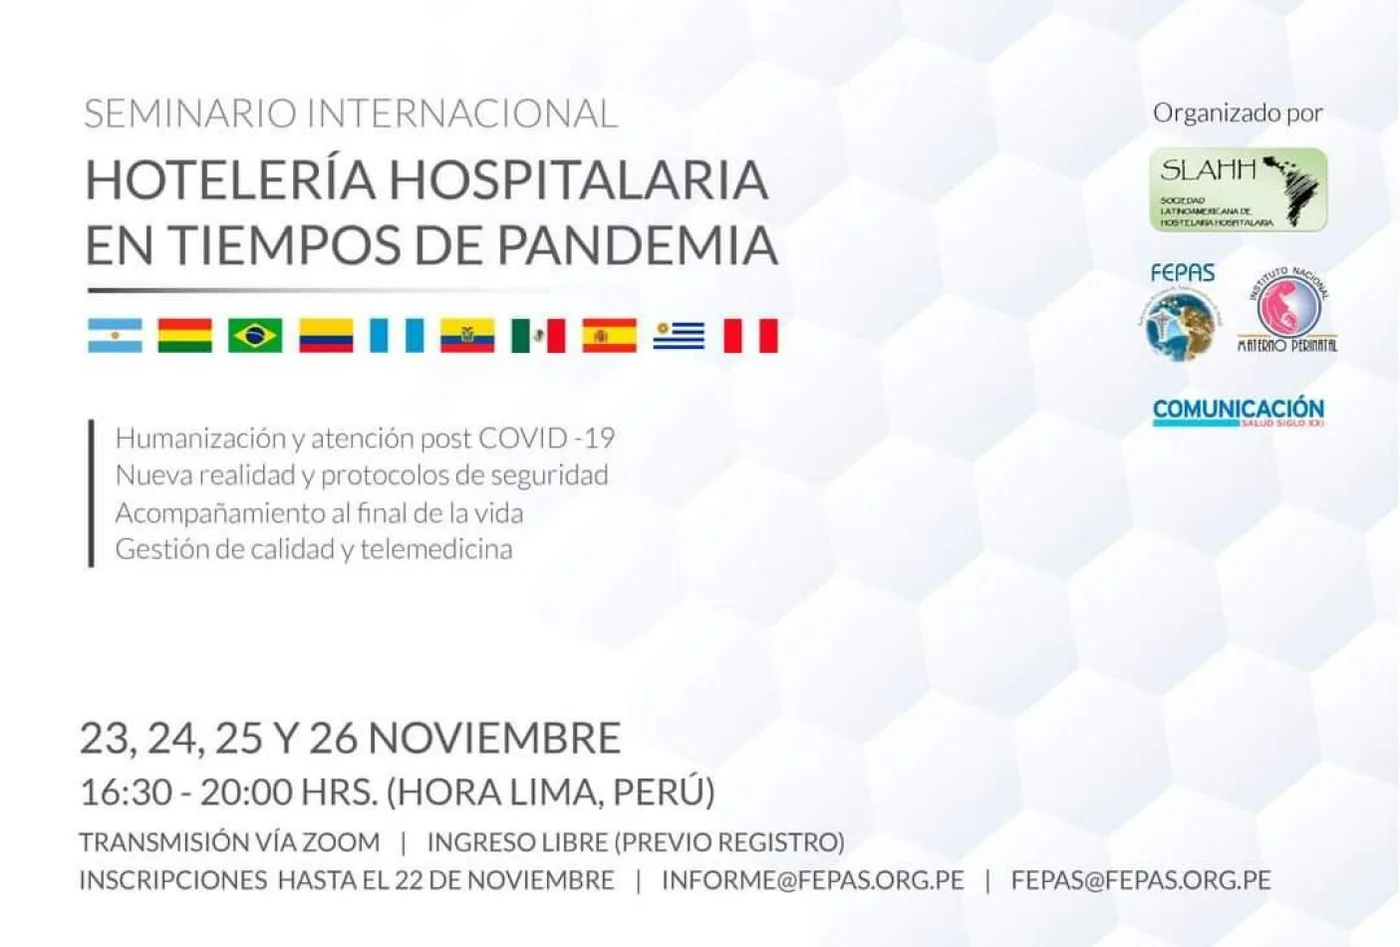 Se realizará vía zoom entre el 23 y el 26 de noviembre, organizado por la Sociedad Latinoamericana de Hotelería Hospitalaria.